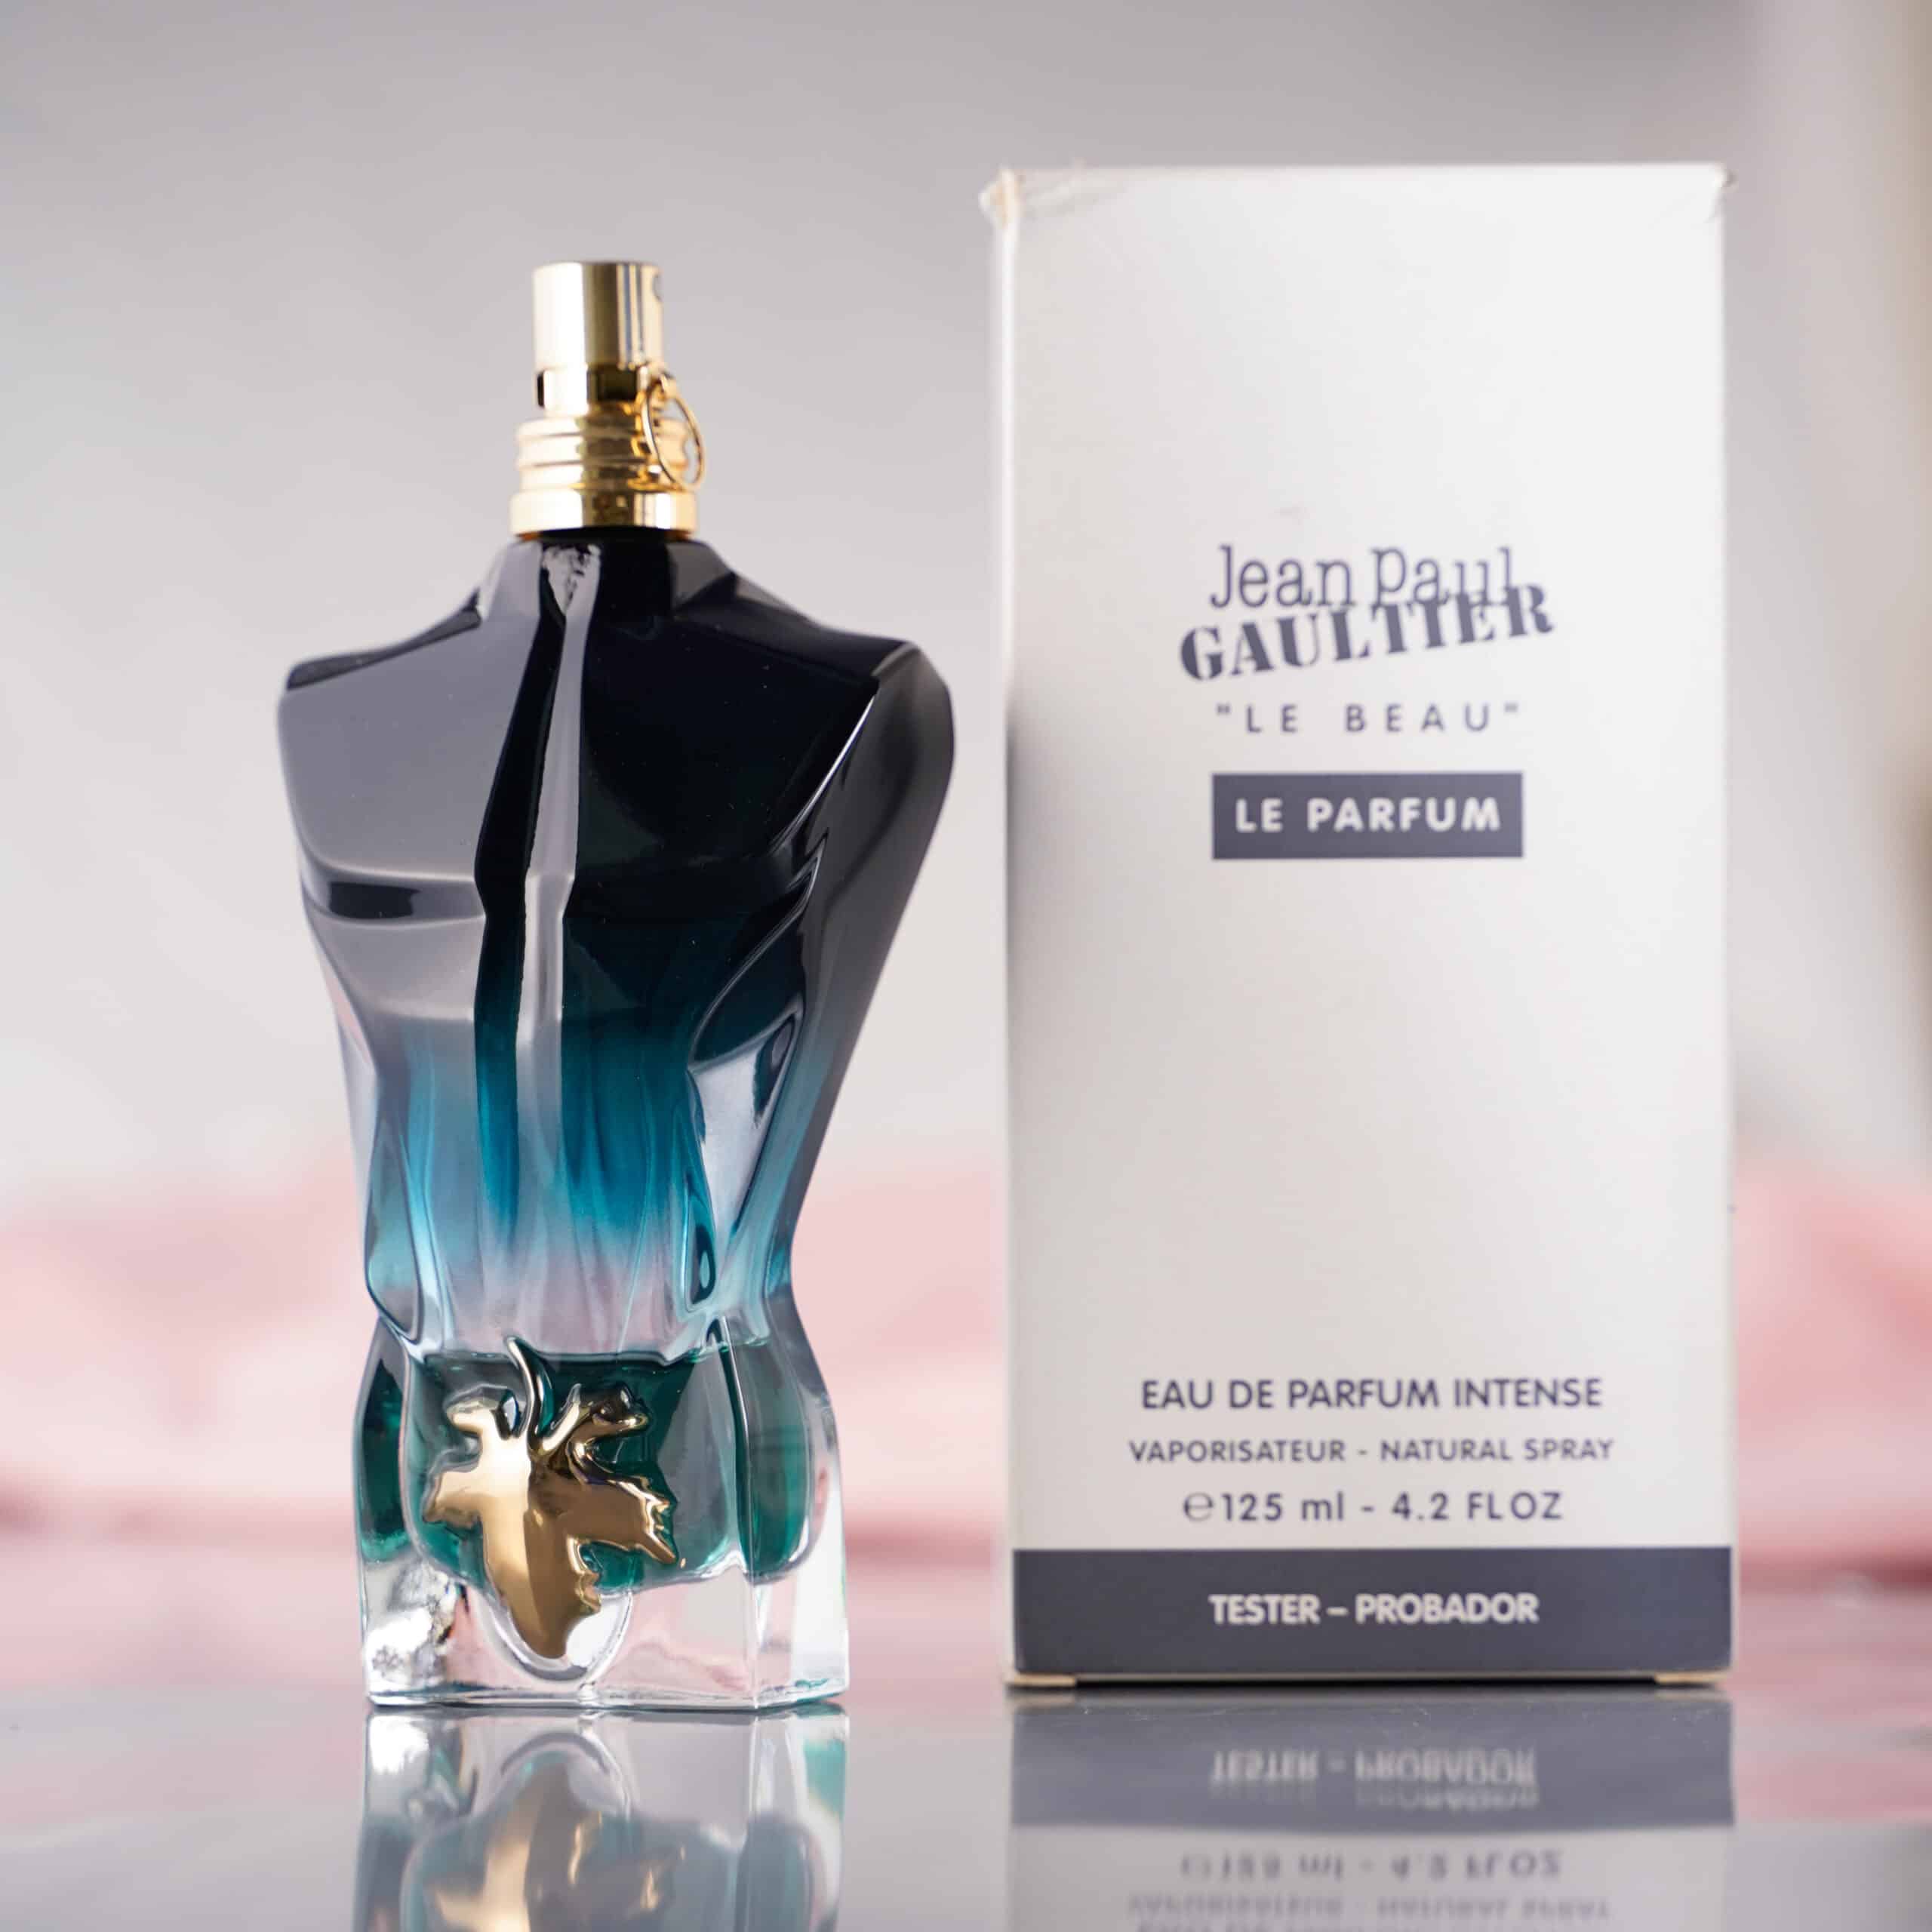 Jean Paul Gaultier Le Beau Le Parfum Eau de Parfum Intense Natural